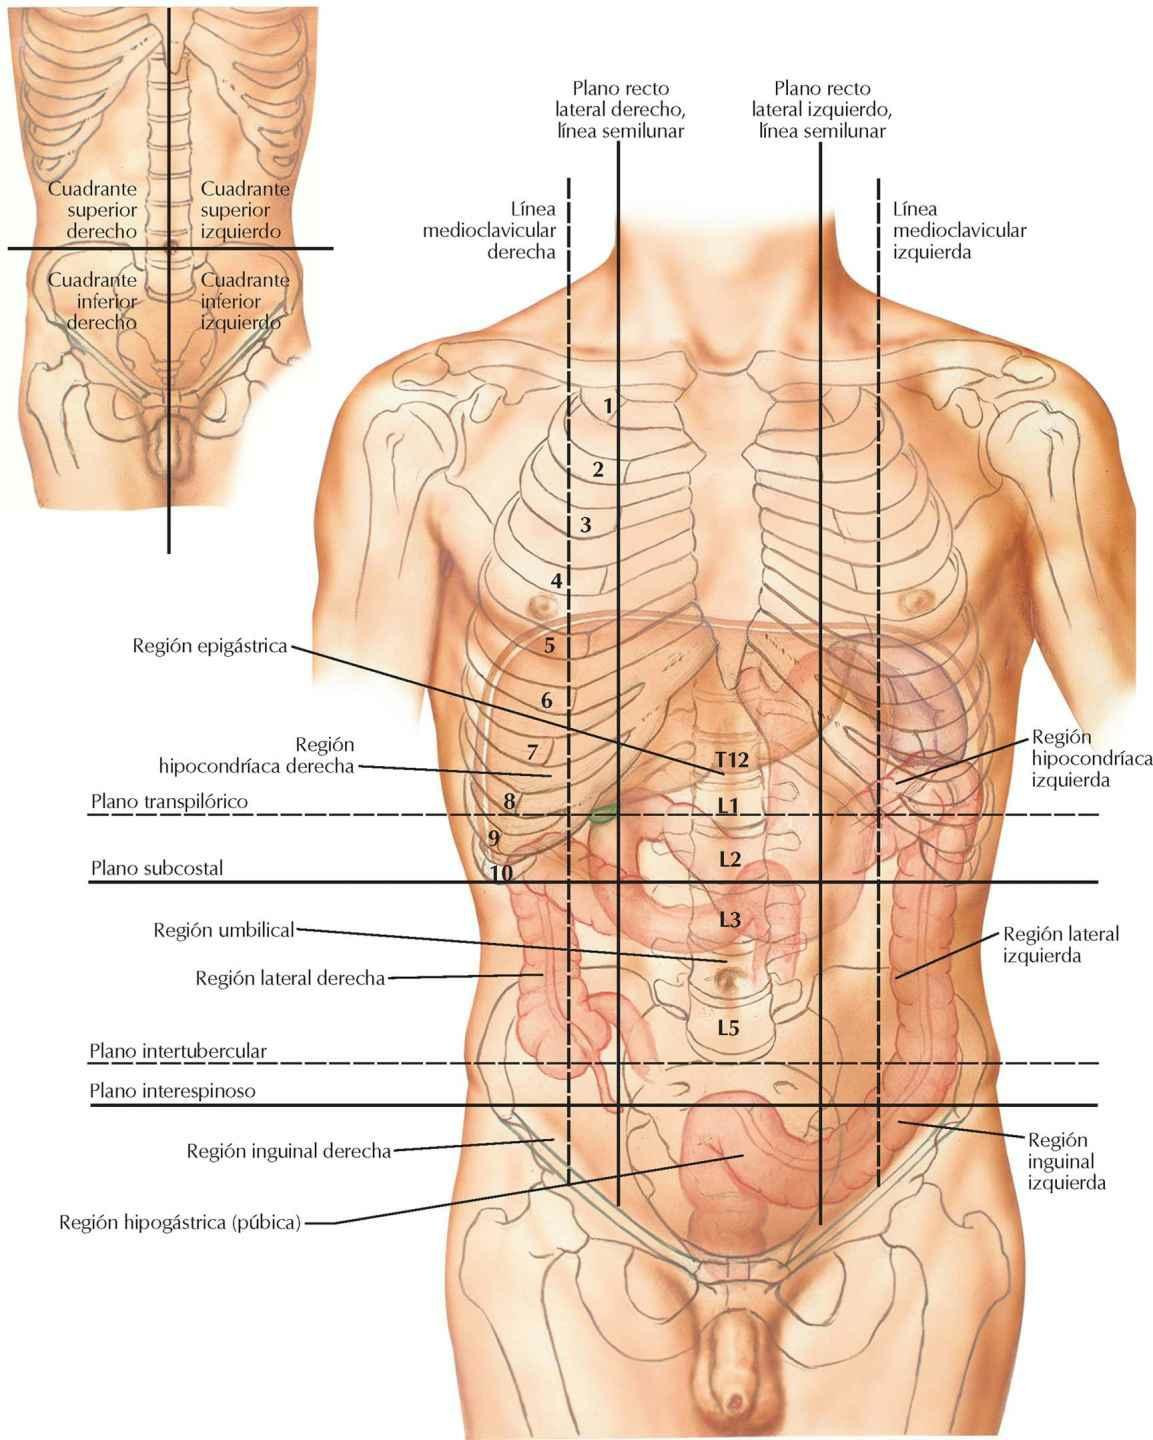 Regiones y planos del abdomen